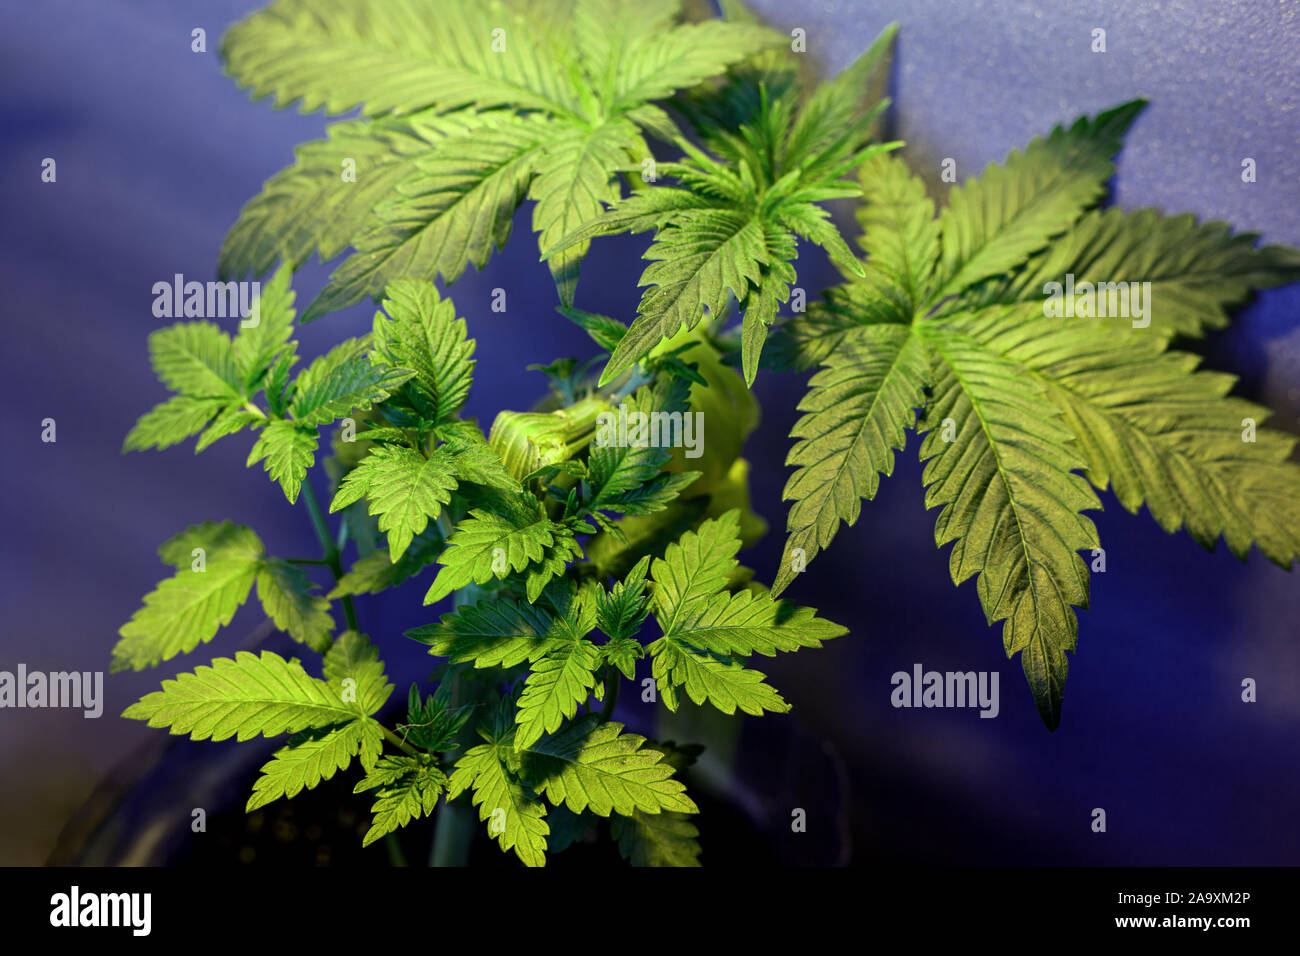 Anlage biegen mit der LST-Technik für Autoflowering Cannabis Sorten, vegetatives Stadium autoflower Marihuana. Stockfoto